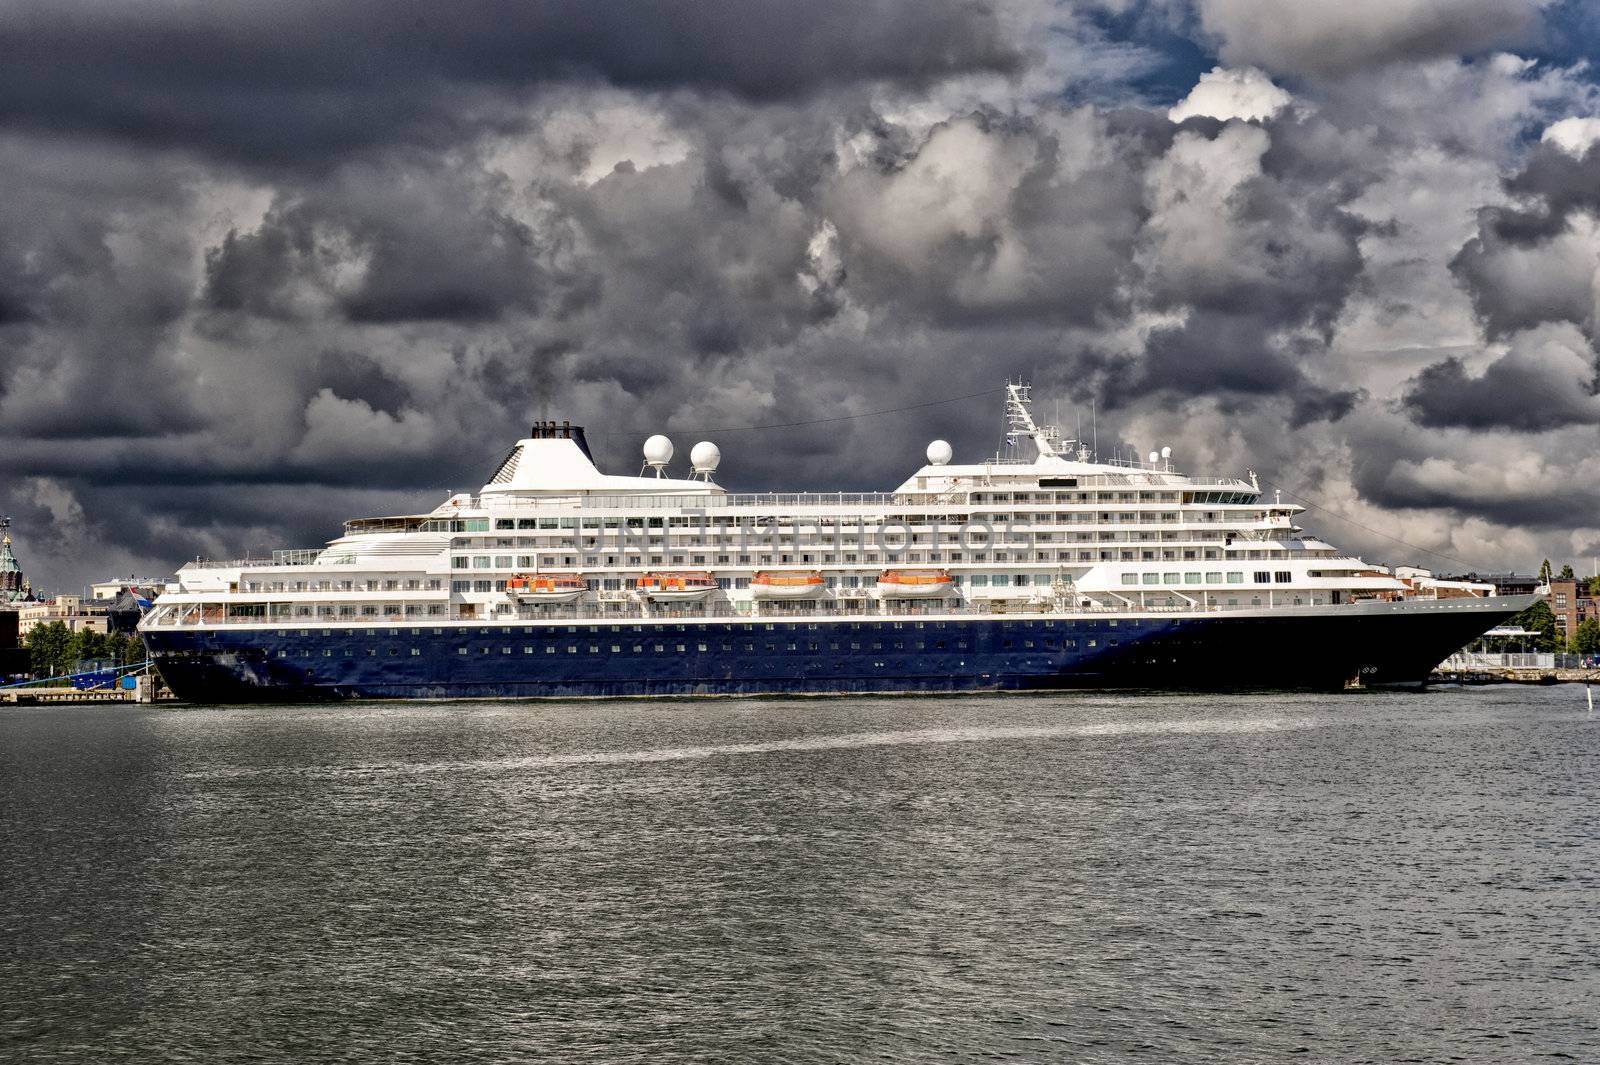 Cruise liner in Helsinki port. Taken on July 2011